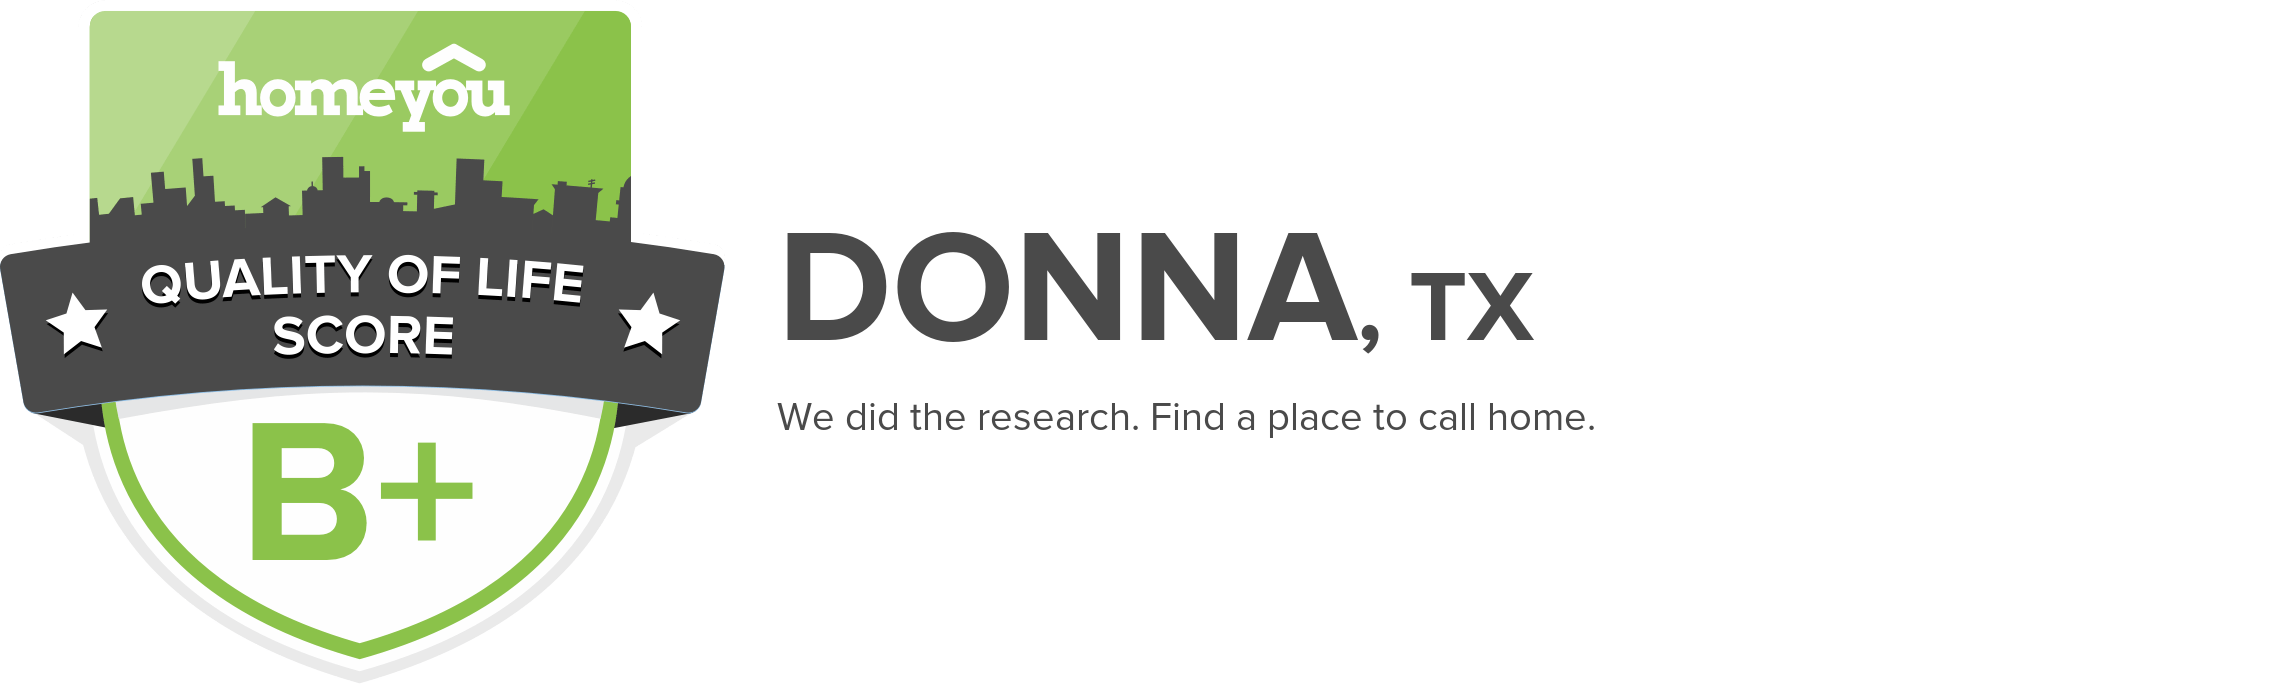 Donna, TX